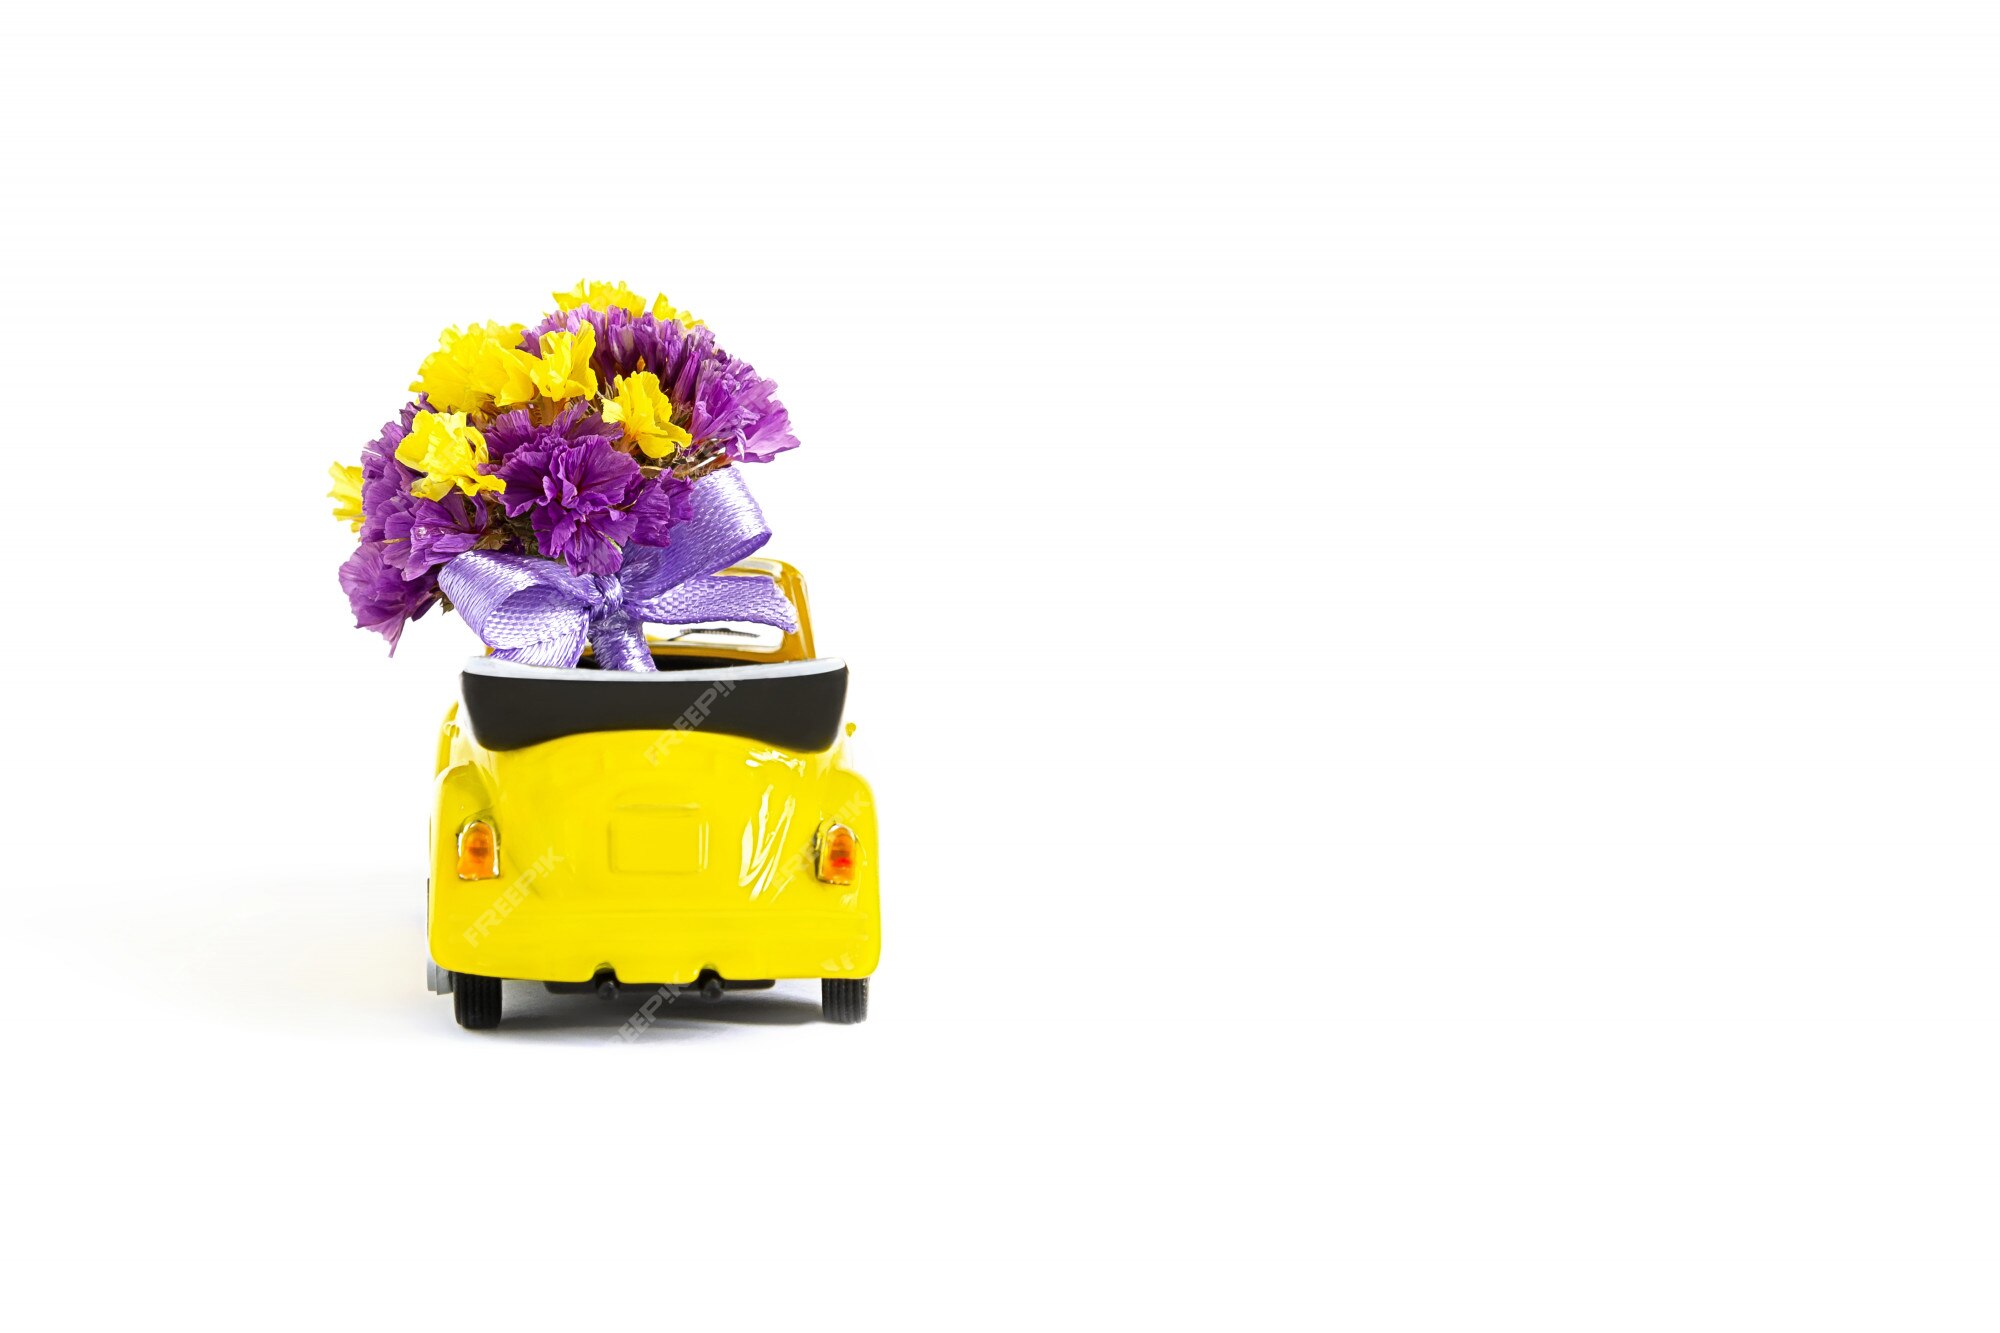 Vue D'un Bouquet Coloré De Fleurs Violettes Qui Se Trouve Dans Une Petite  Voiture Jaune. Mise Au Point Sélective. Le Concept De Vacances, Mariage,  Livraison De Fleurs, Cadeau | Photo Premium